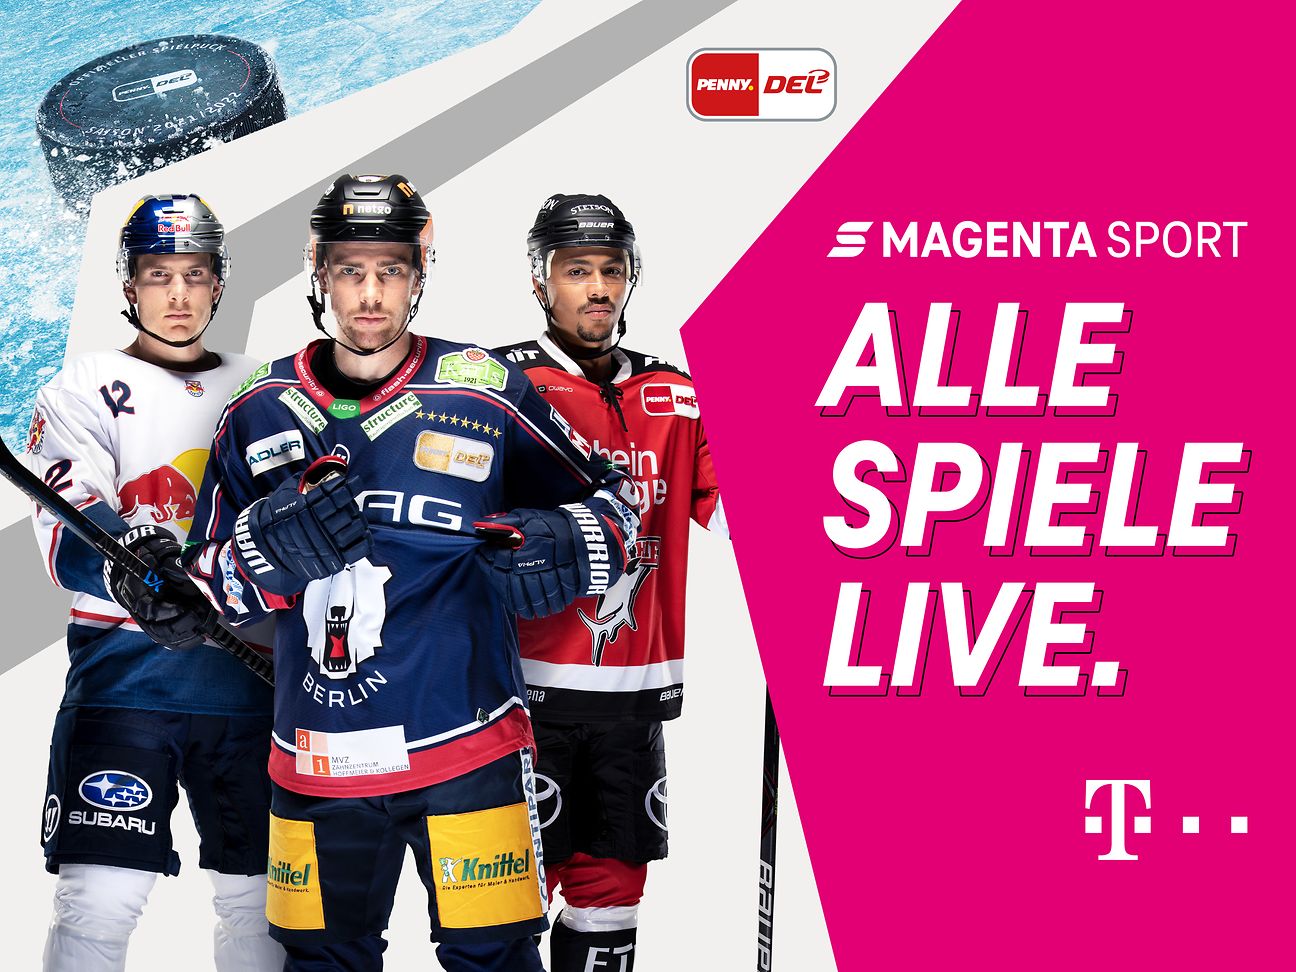 Telekom MagentaSport Volles Sportprogramm für Eishockey-Fans